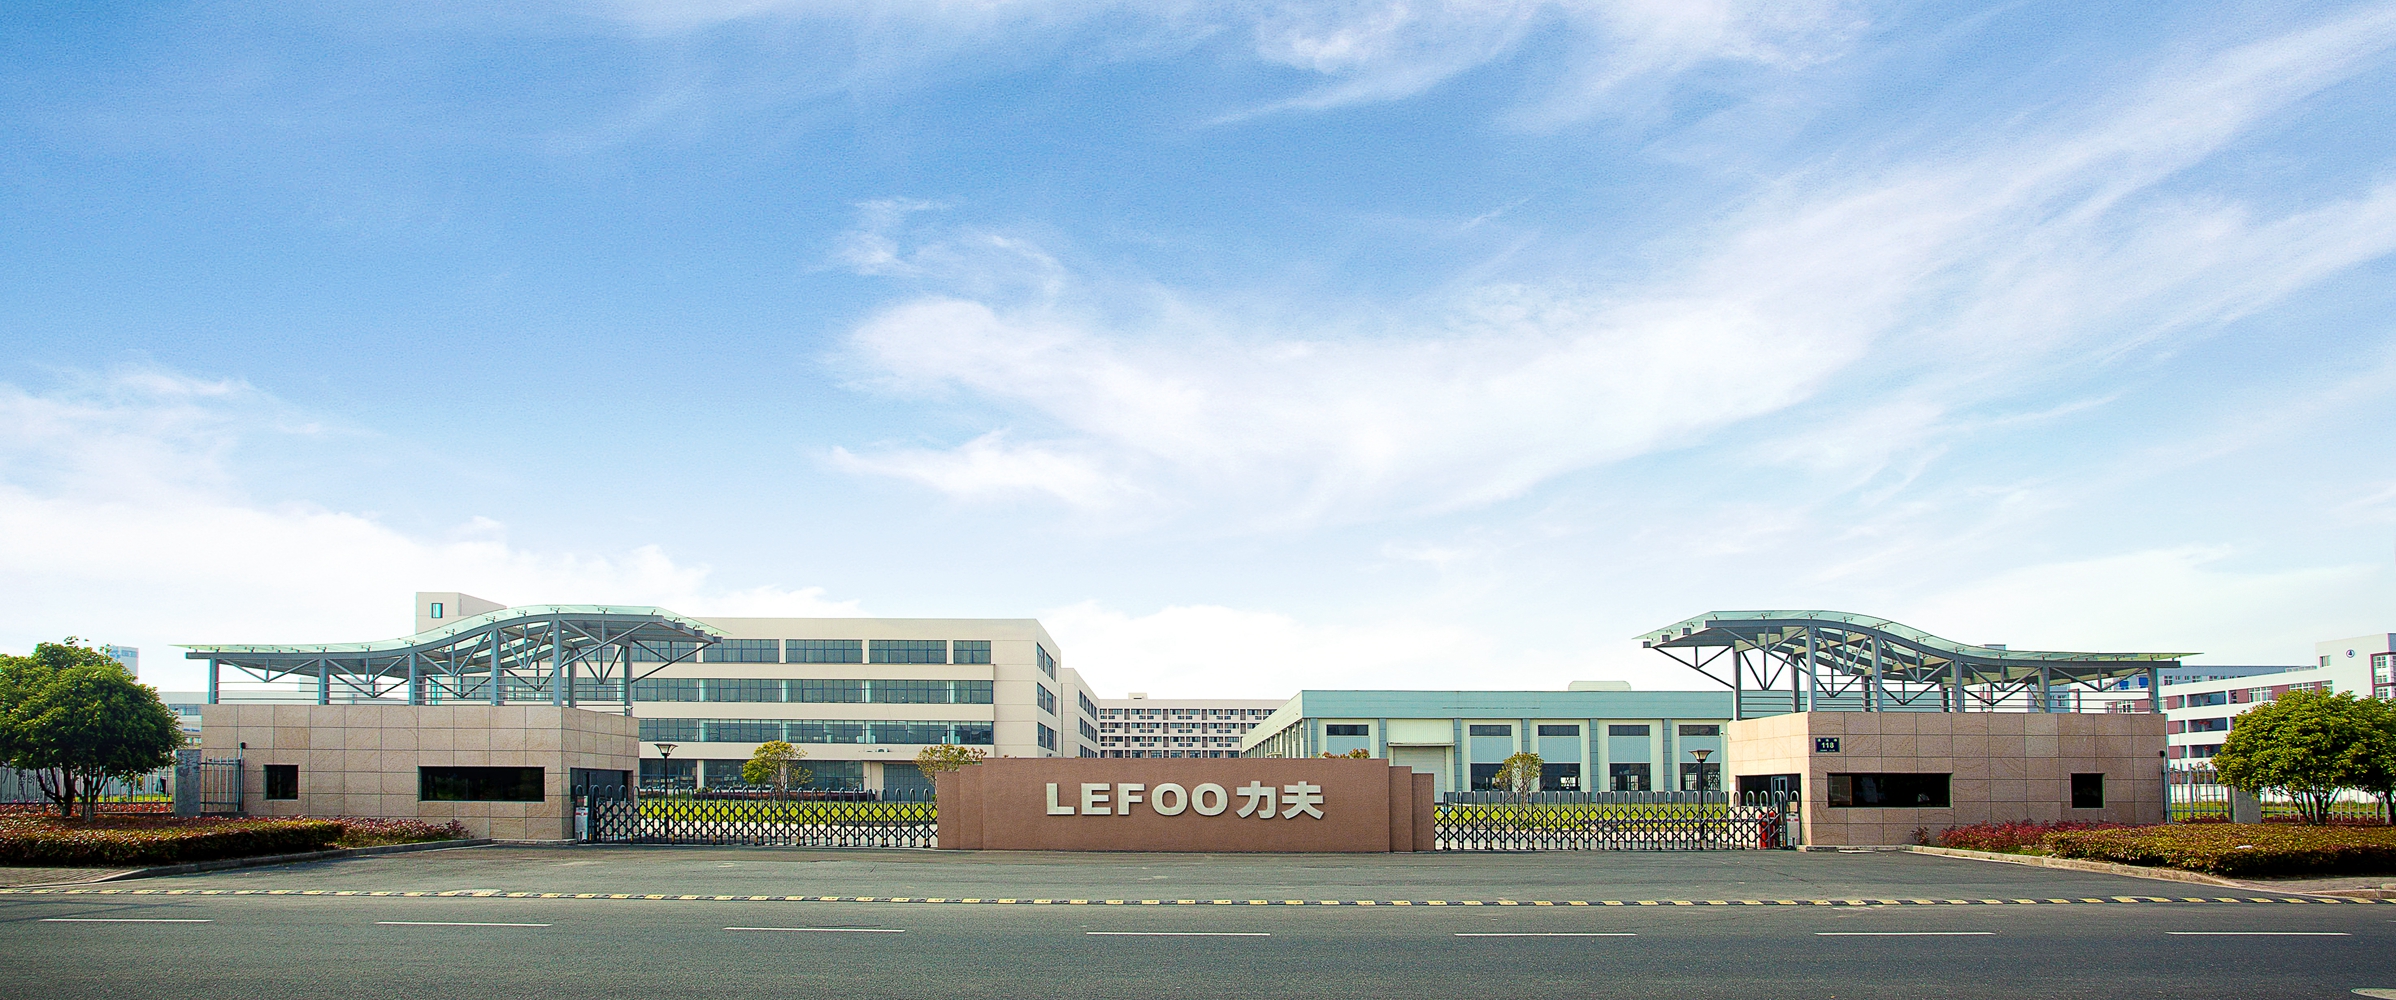 LEFOO LFT2600 Pressure Transmitter for Refrigeration